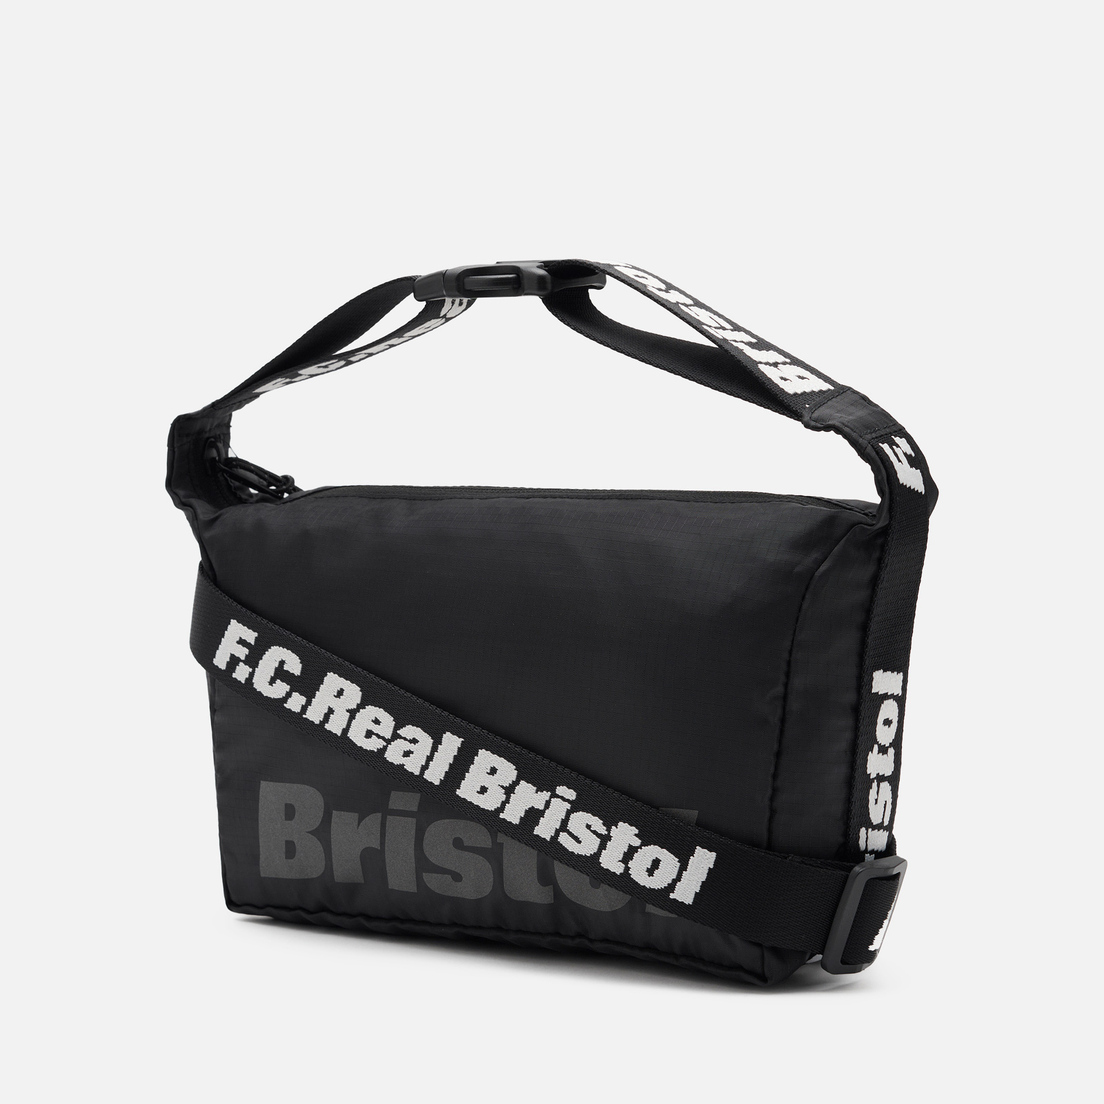 F.C. Real Bristol Сумка 2-Way Small Shoulder